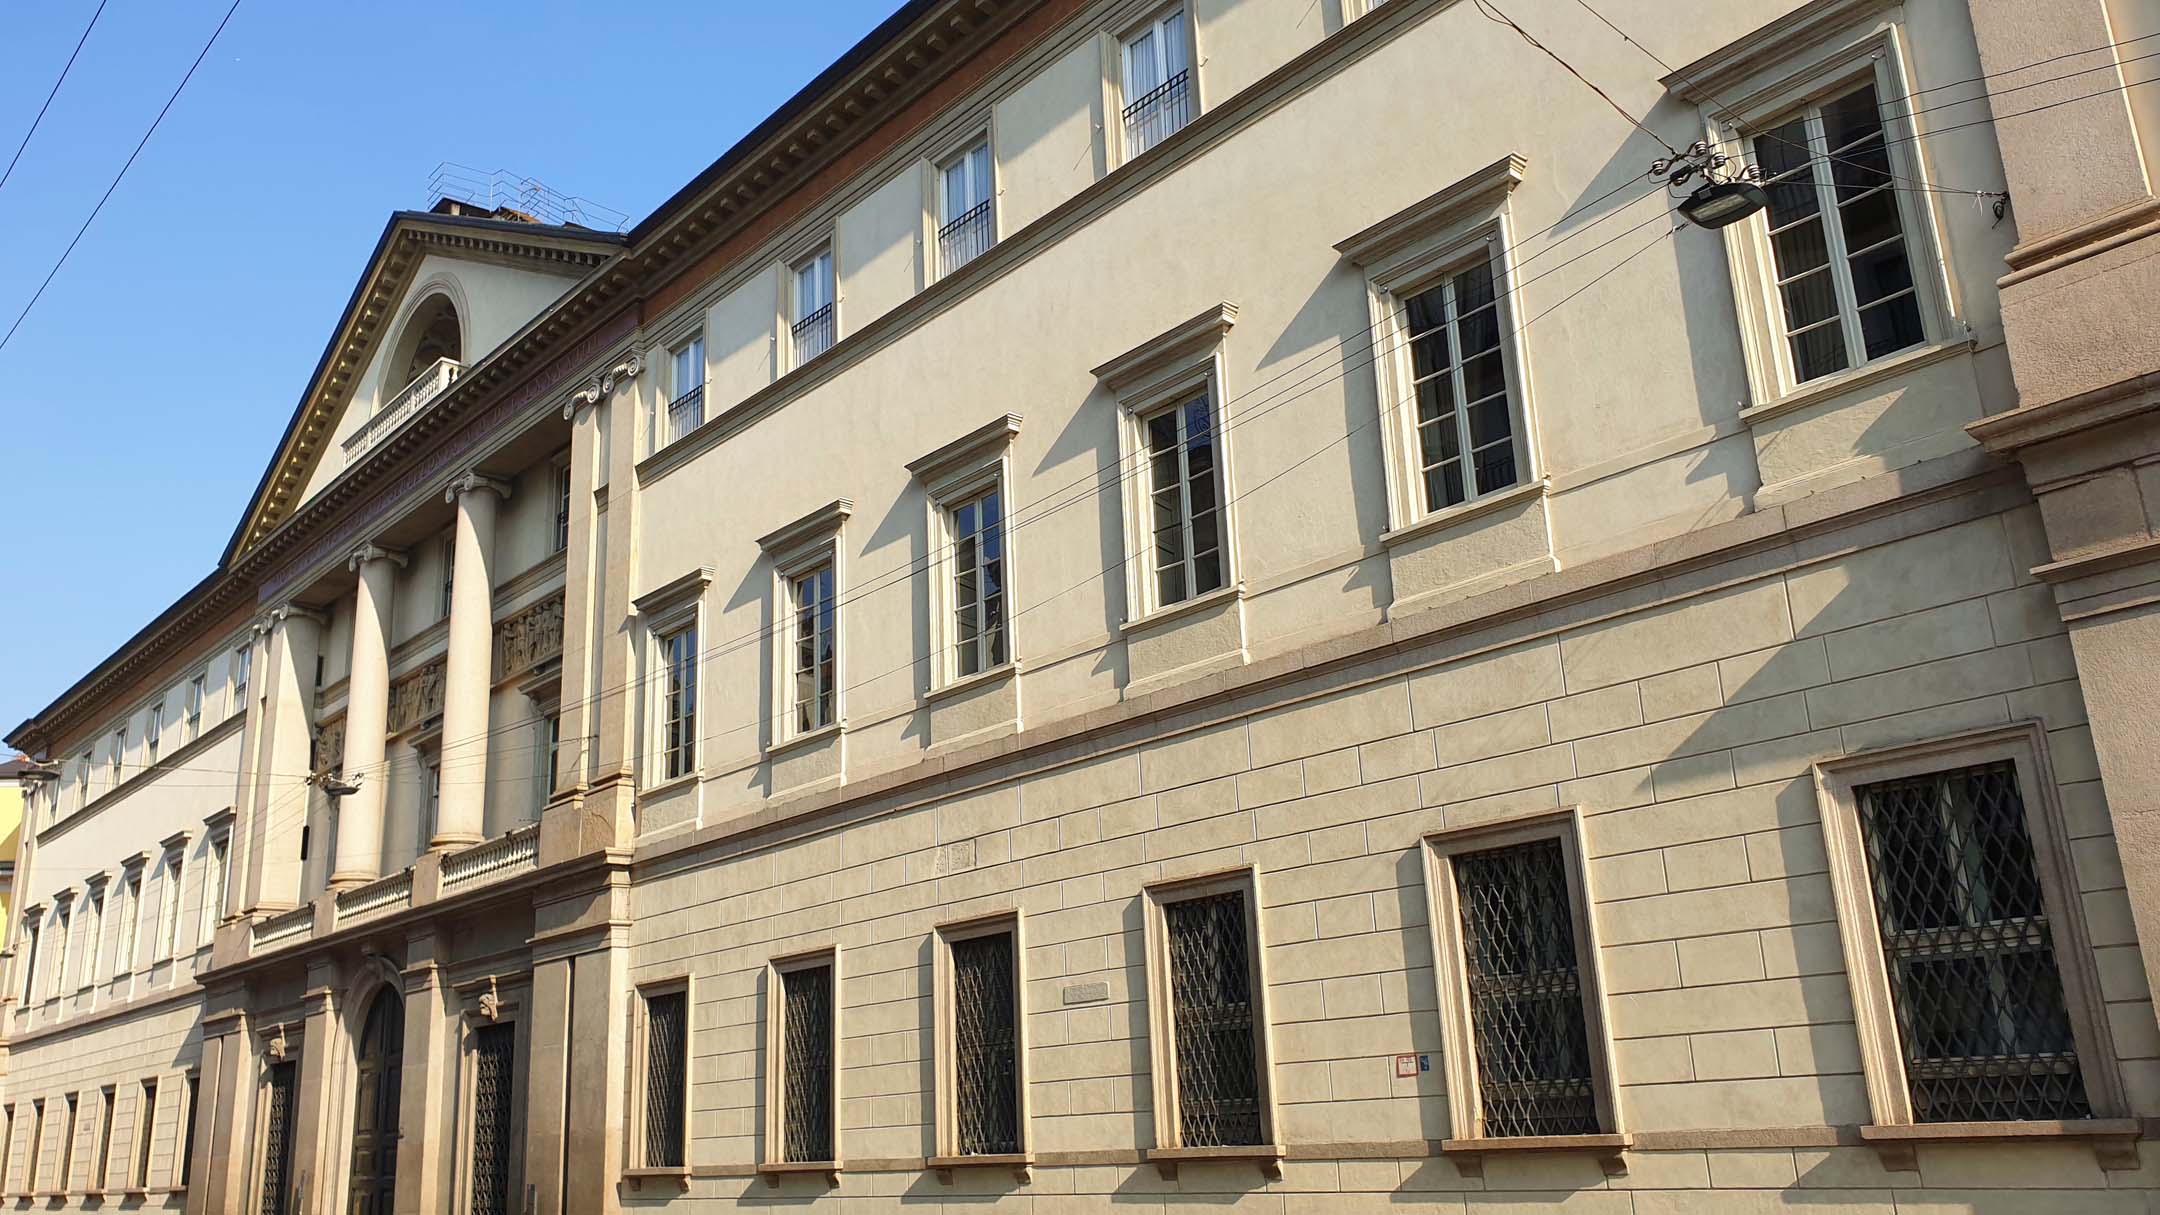 Palazzo Serbelloni